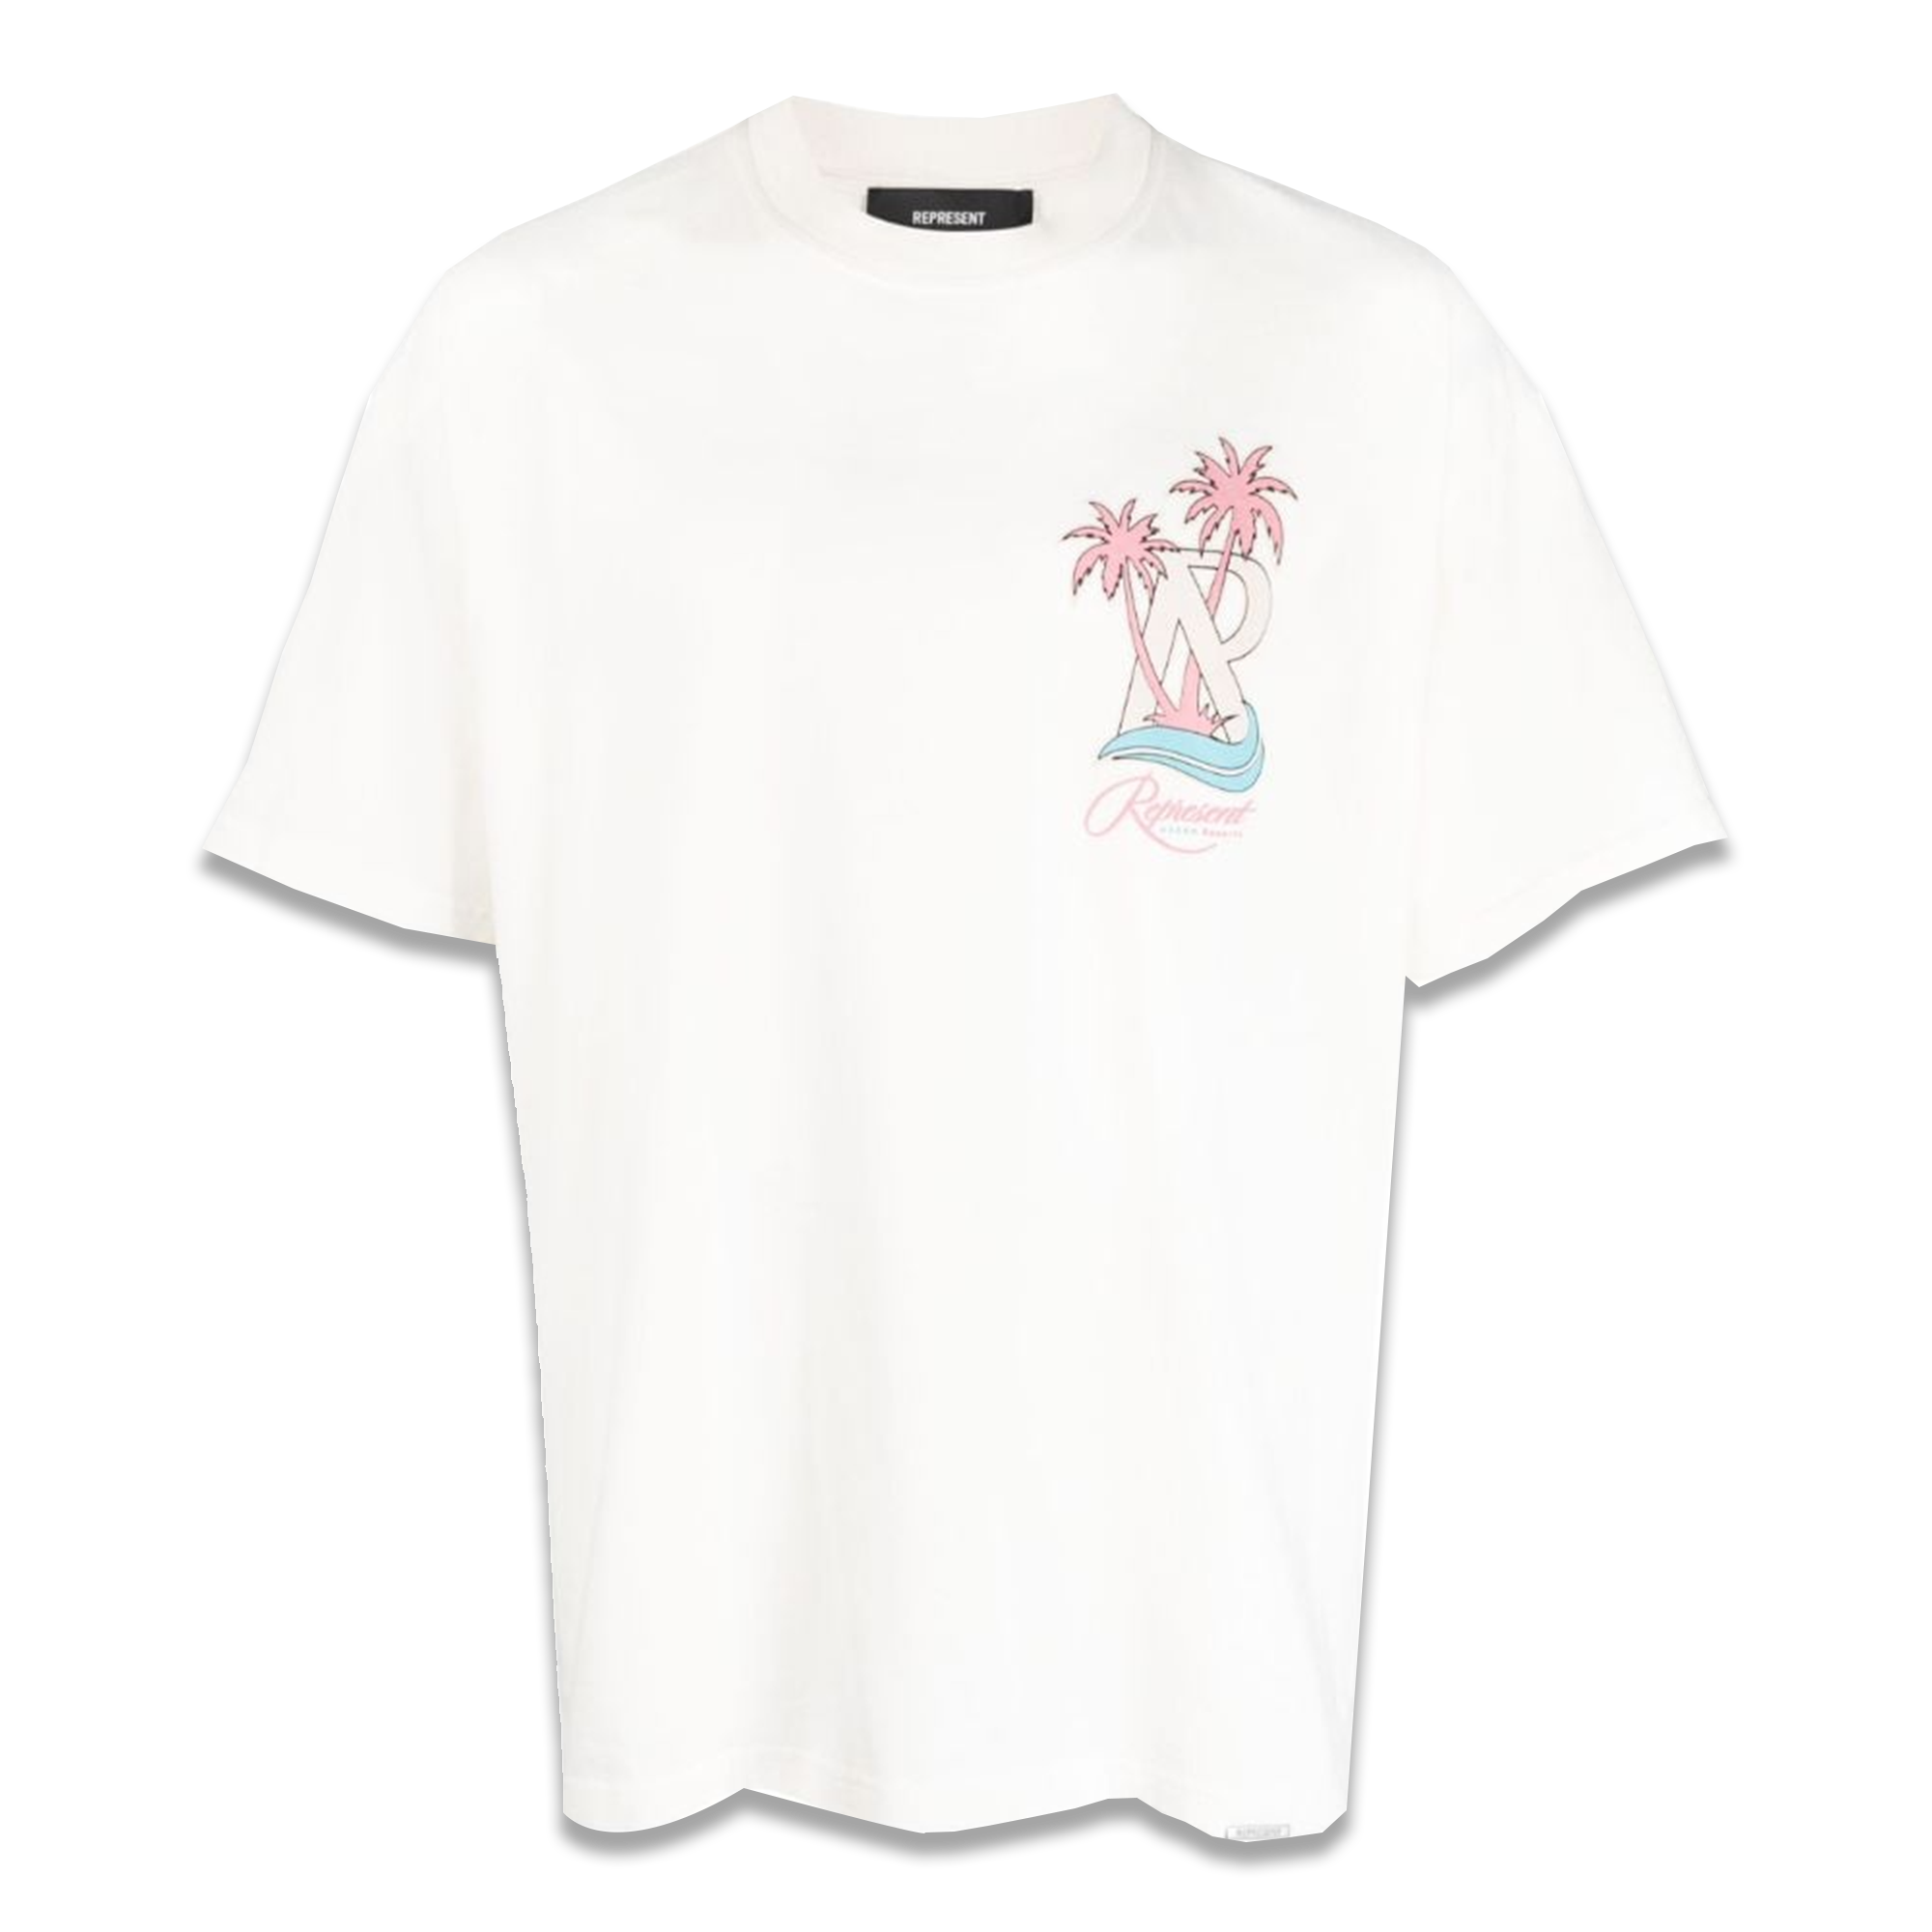 Represent White Resort Logo Print Cotton T-Shirt - Fairchild Fashion 